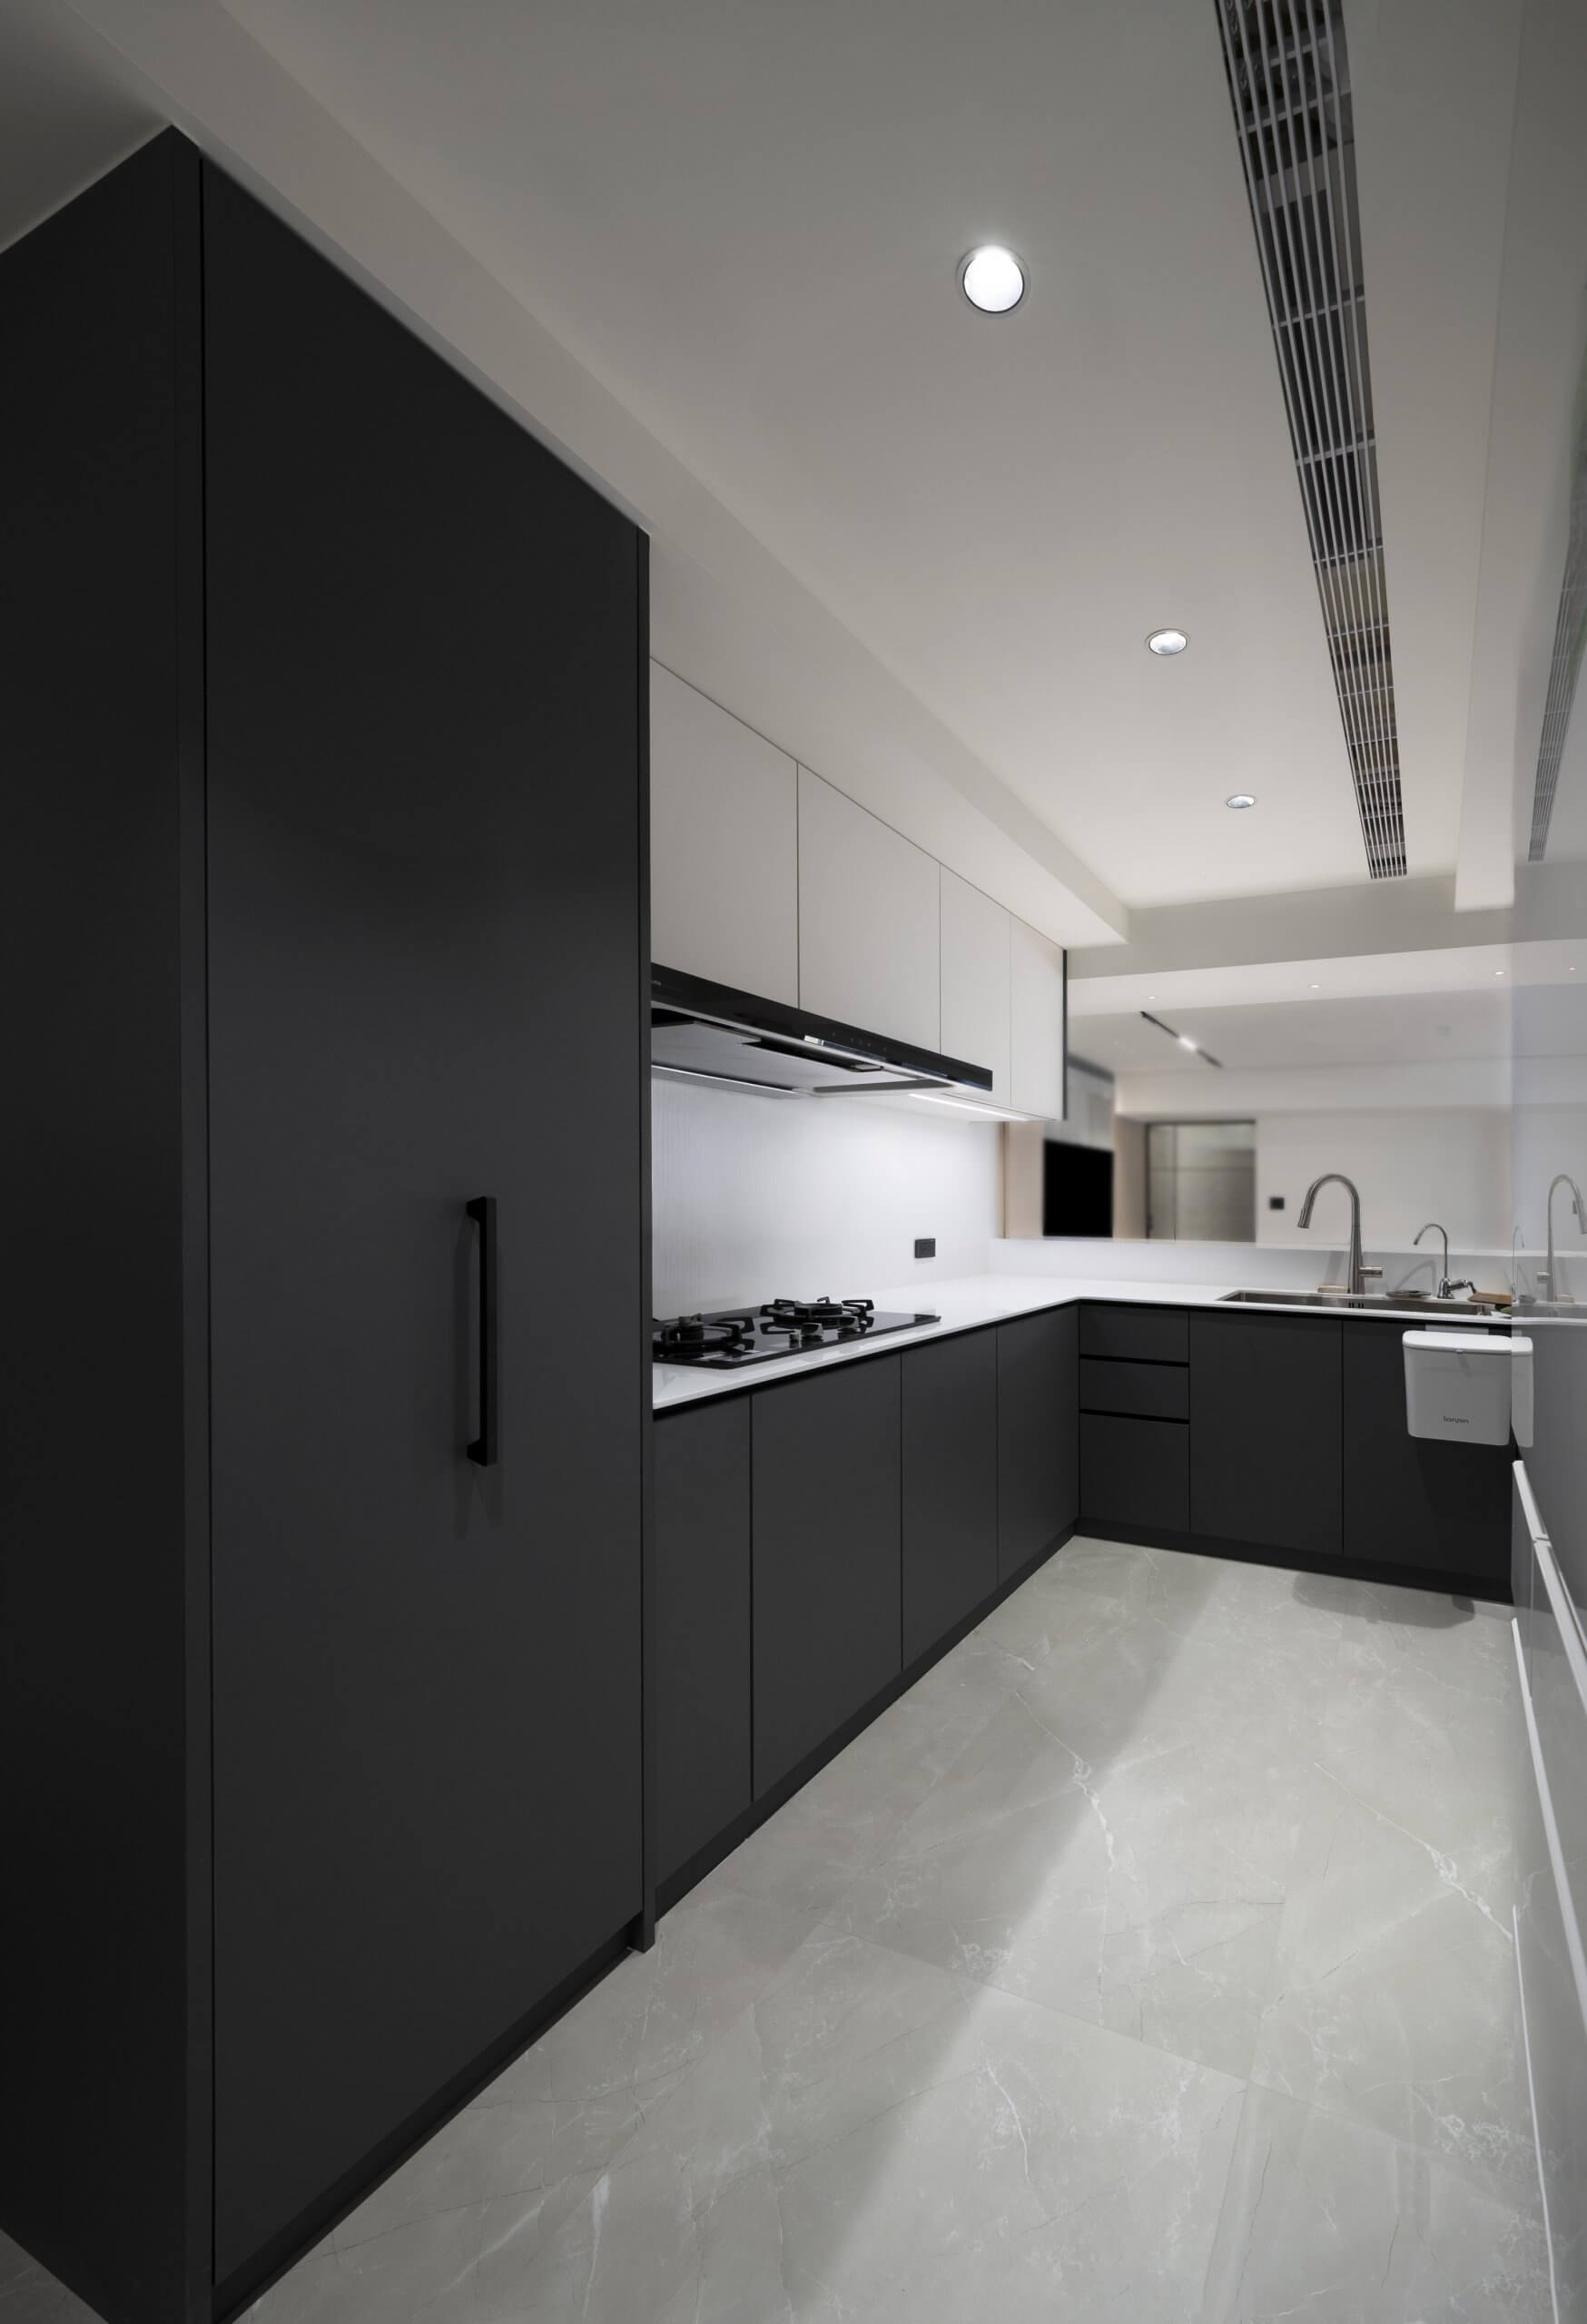 Nhà bếp hiện đại với tủ gỗ màu đen tuyền mờ mượt, mặt bàn màu trắng và phần cứng tối giản.